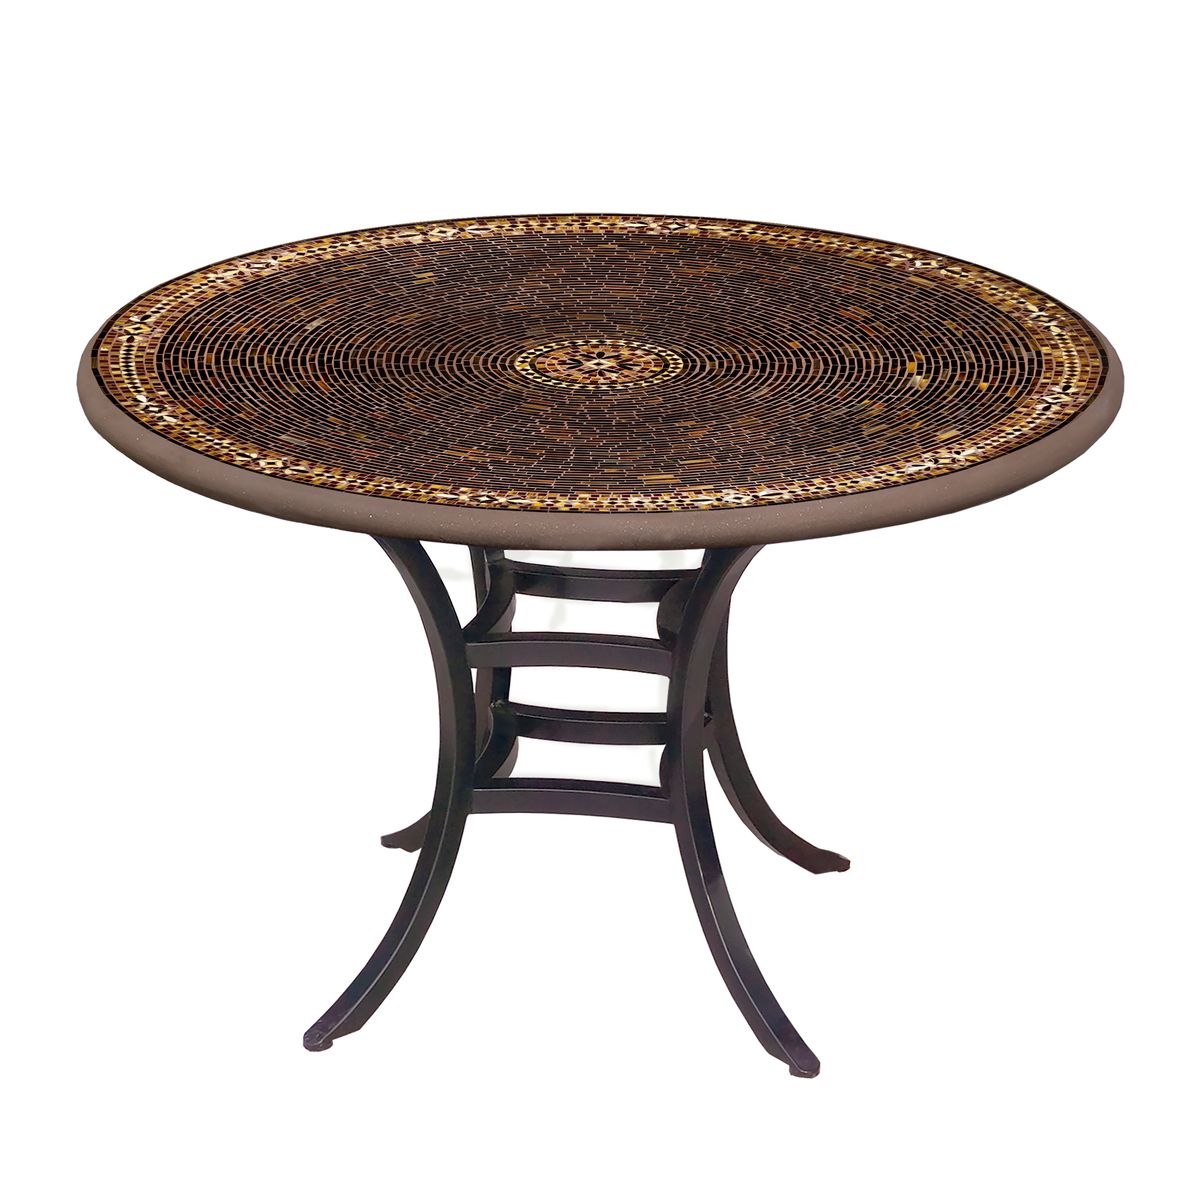 Mahogany Atlas Mosaic Patio Table-Iron Accents